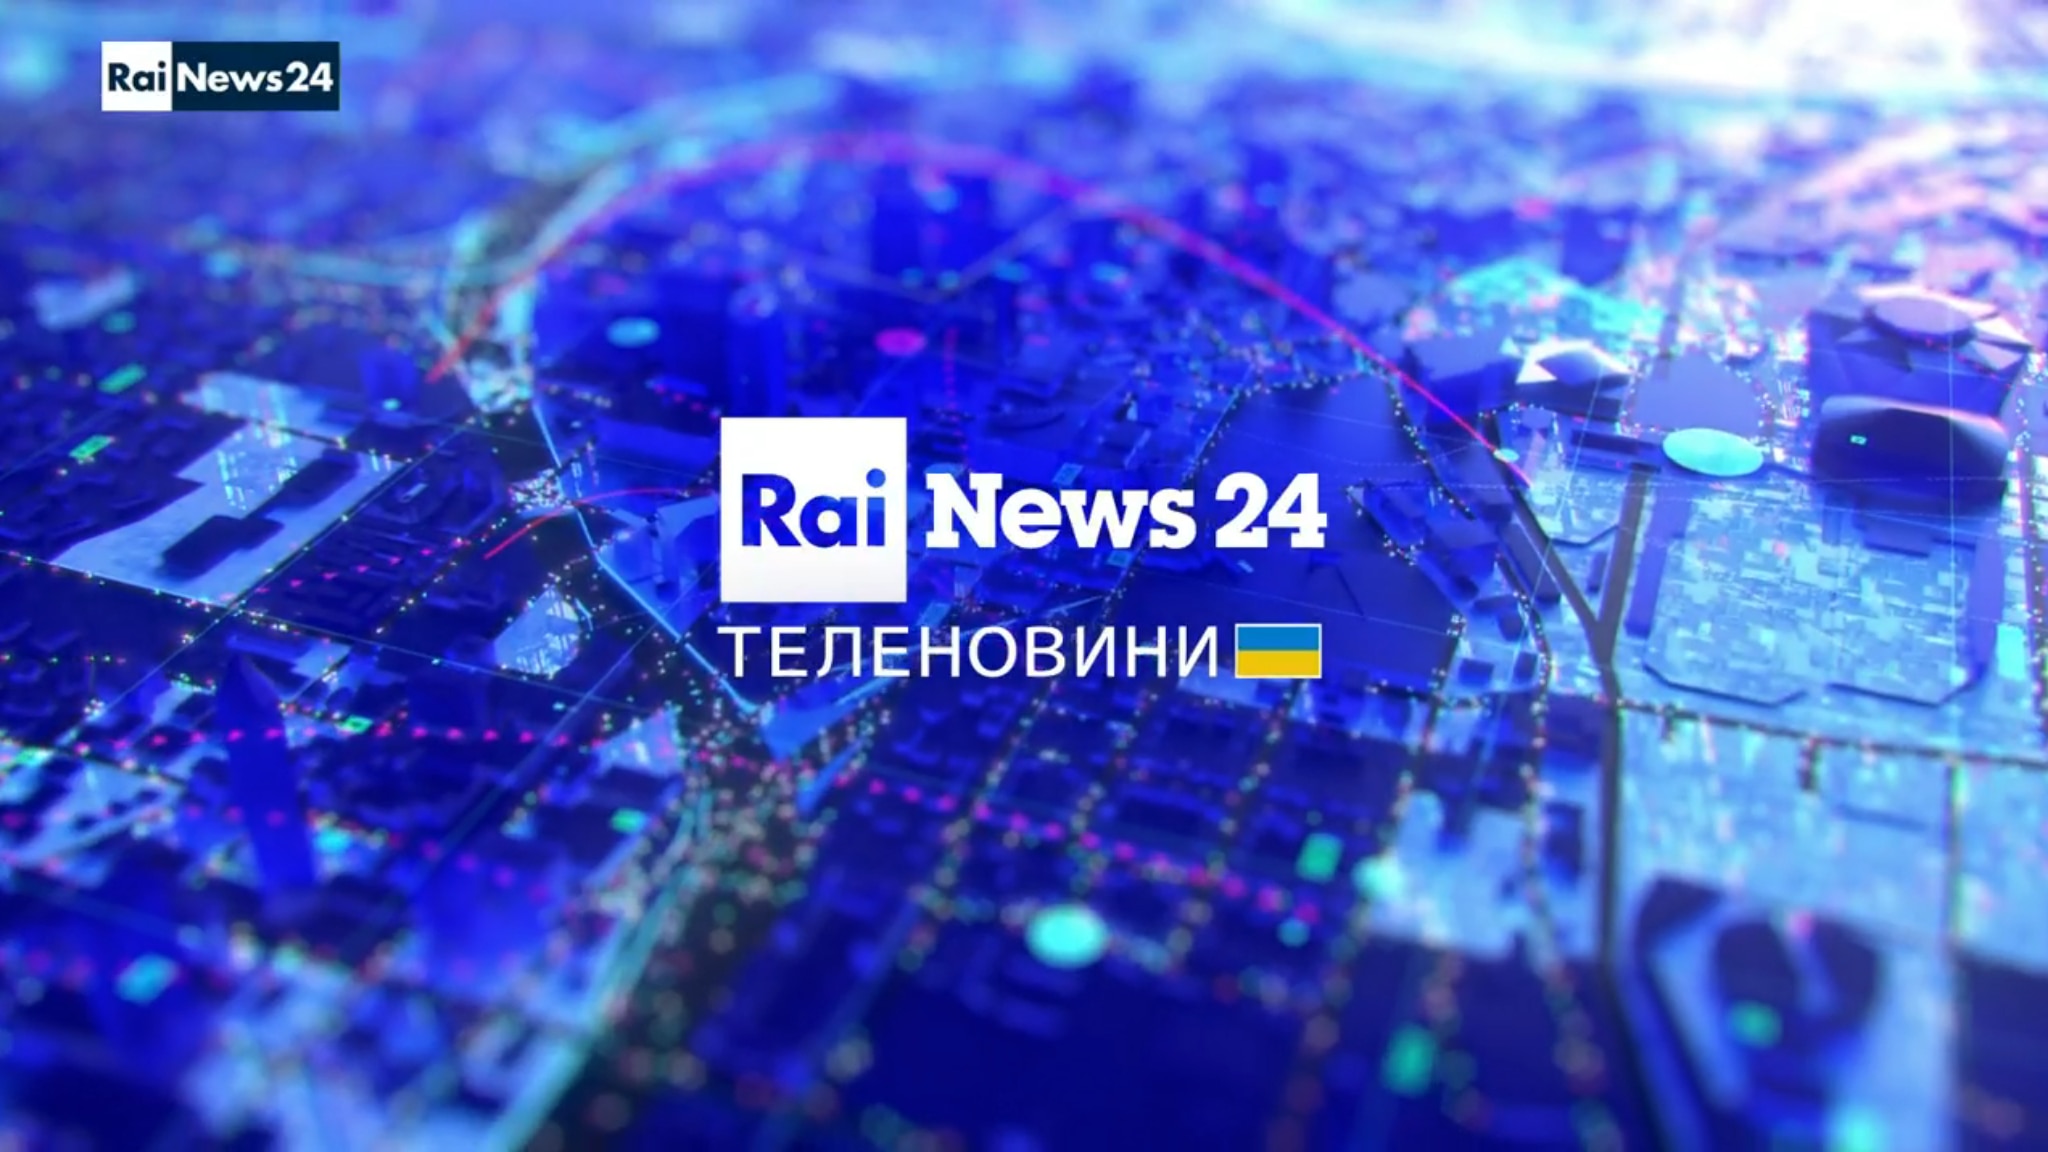 Il Tg di Rainews24 in Lingua Ucraina